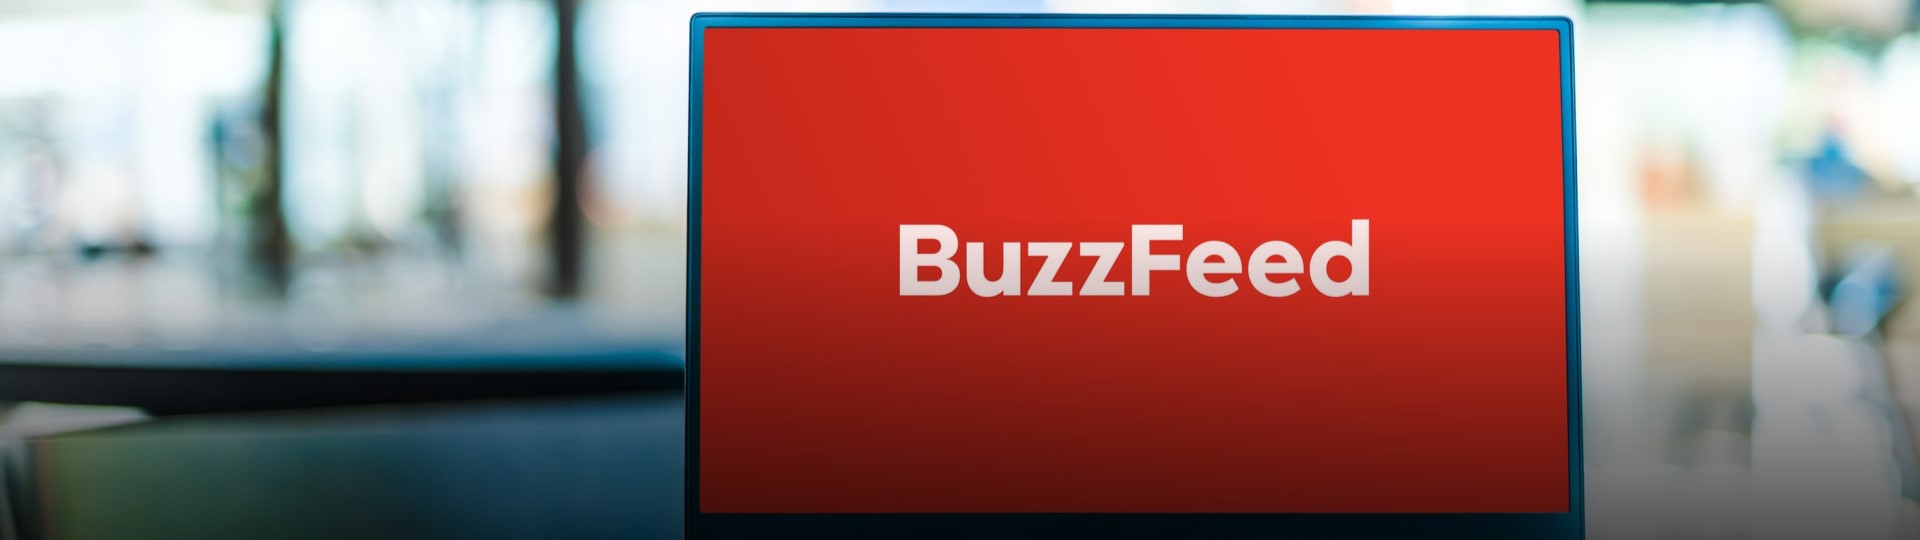 BuzzFeed vstoupí na burzu, doufá v ohodnocení 1,5 miliardy dolarů